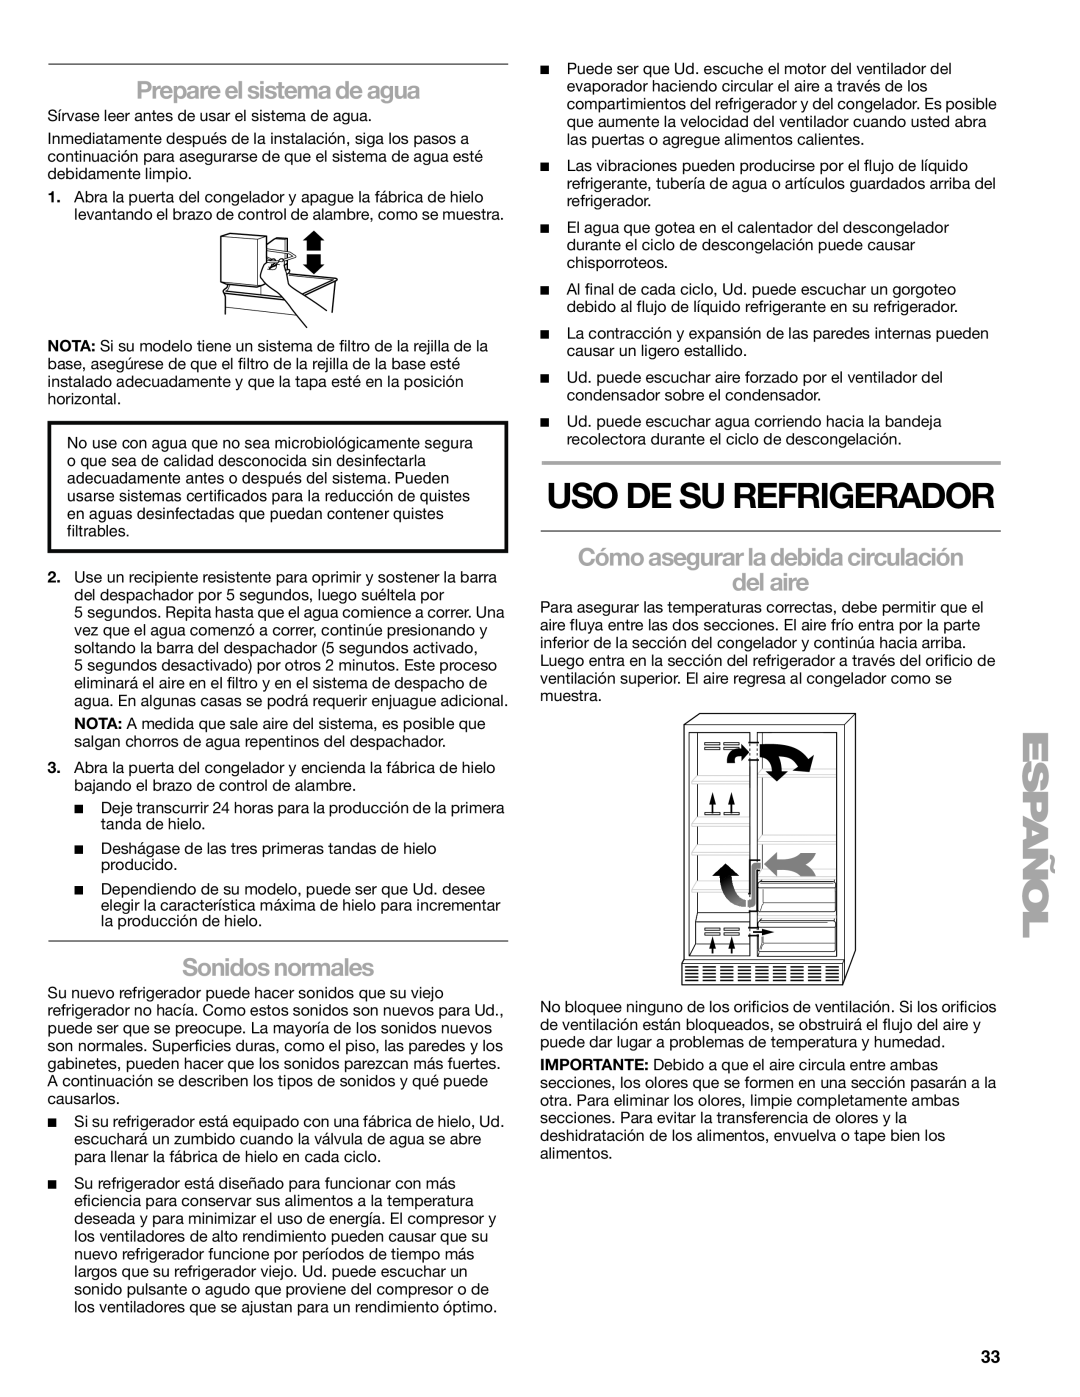 Sears T1KB2/T1RFKB2 manual Uso De Su Refrigerador, Prepare el sistema de agua, Sonidos normales 